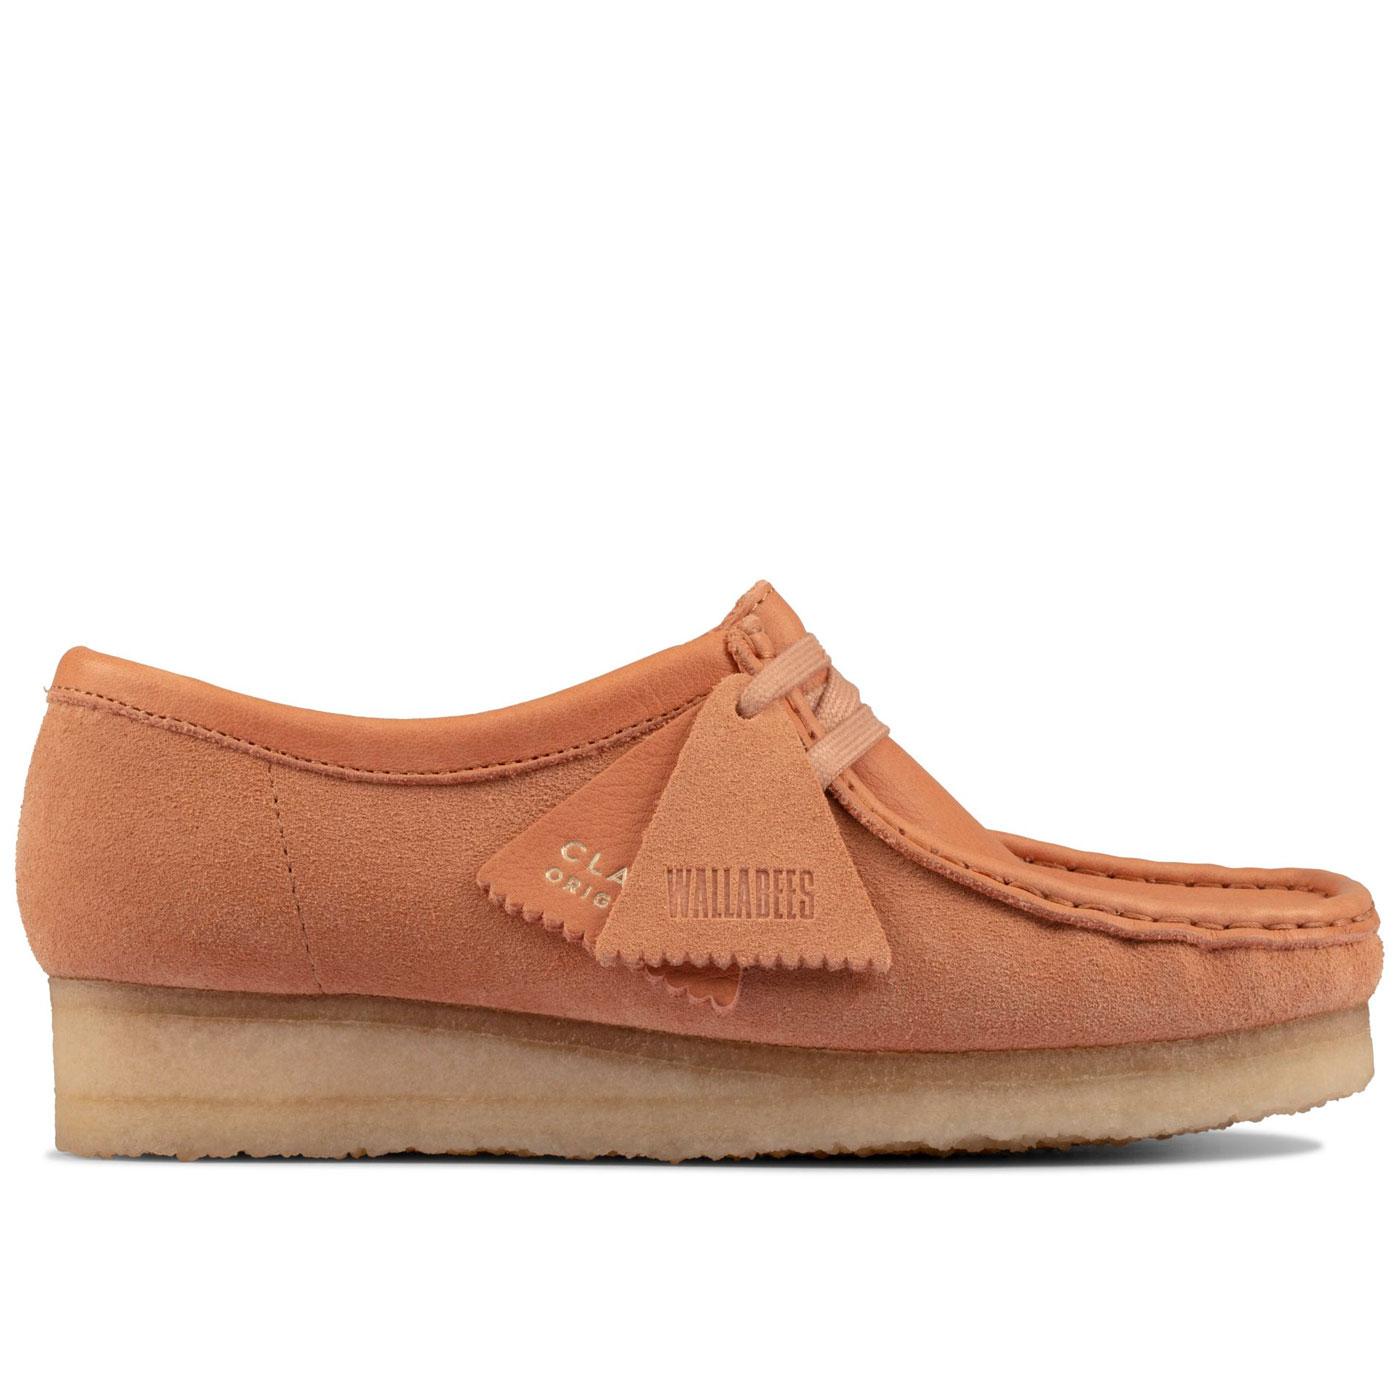 CLARKS Wallabee Women's Mod Suede Shoes in Sandstone